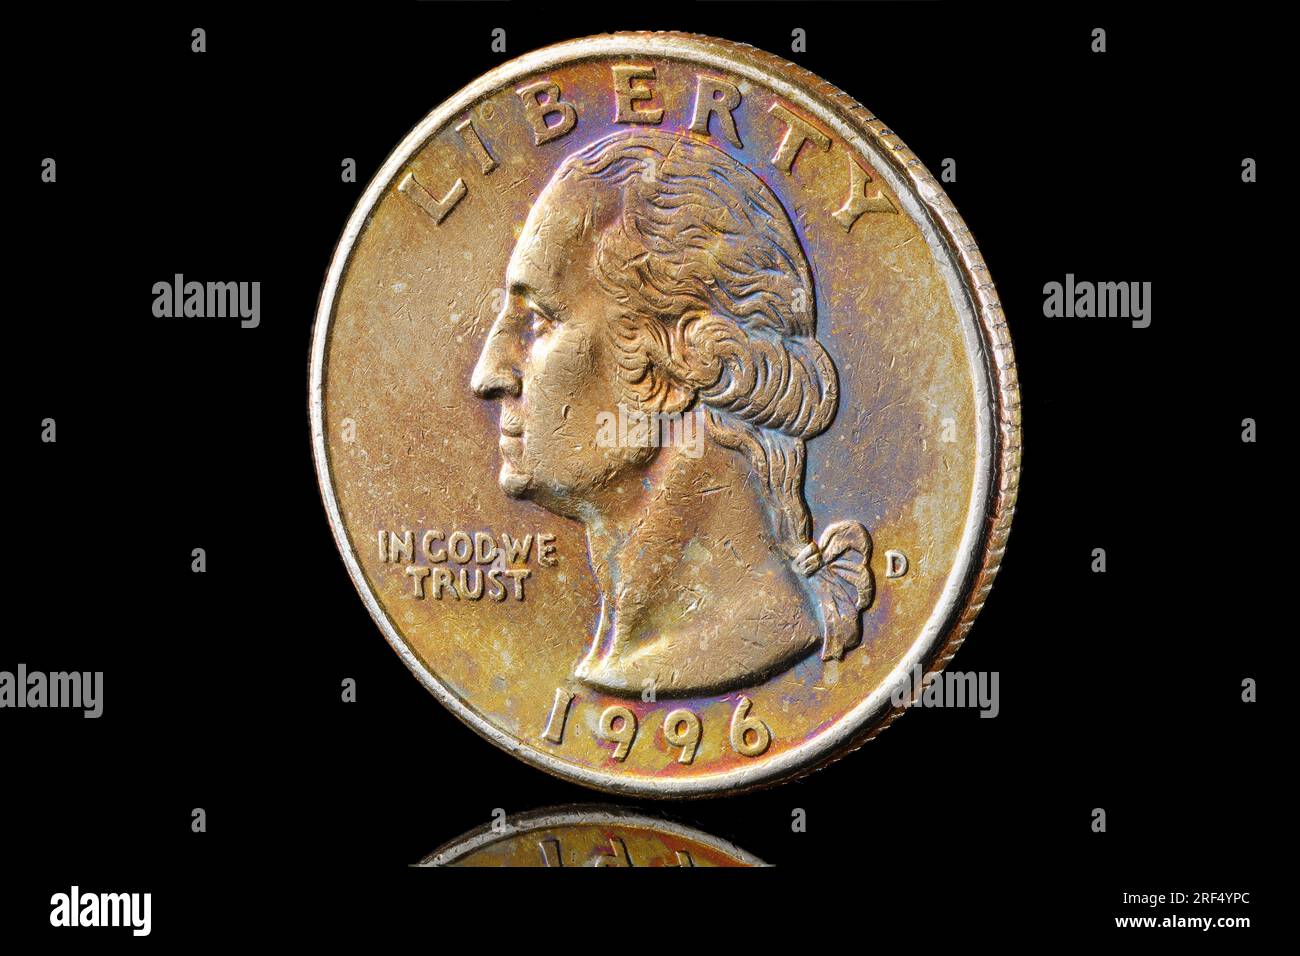 1996 Quarter Dollar con splendide tonalità dell'arcobaleno. Il dritto presenta un ritratto di George Washington e il rovescio mostra un'aquila che stringe le frecce Foto Stock